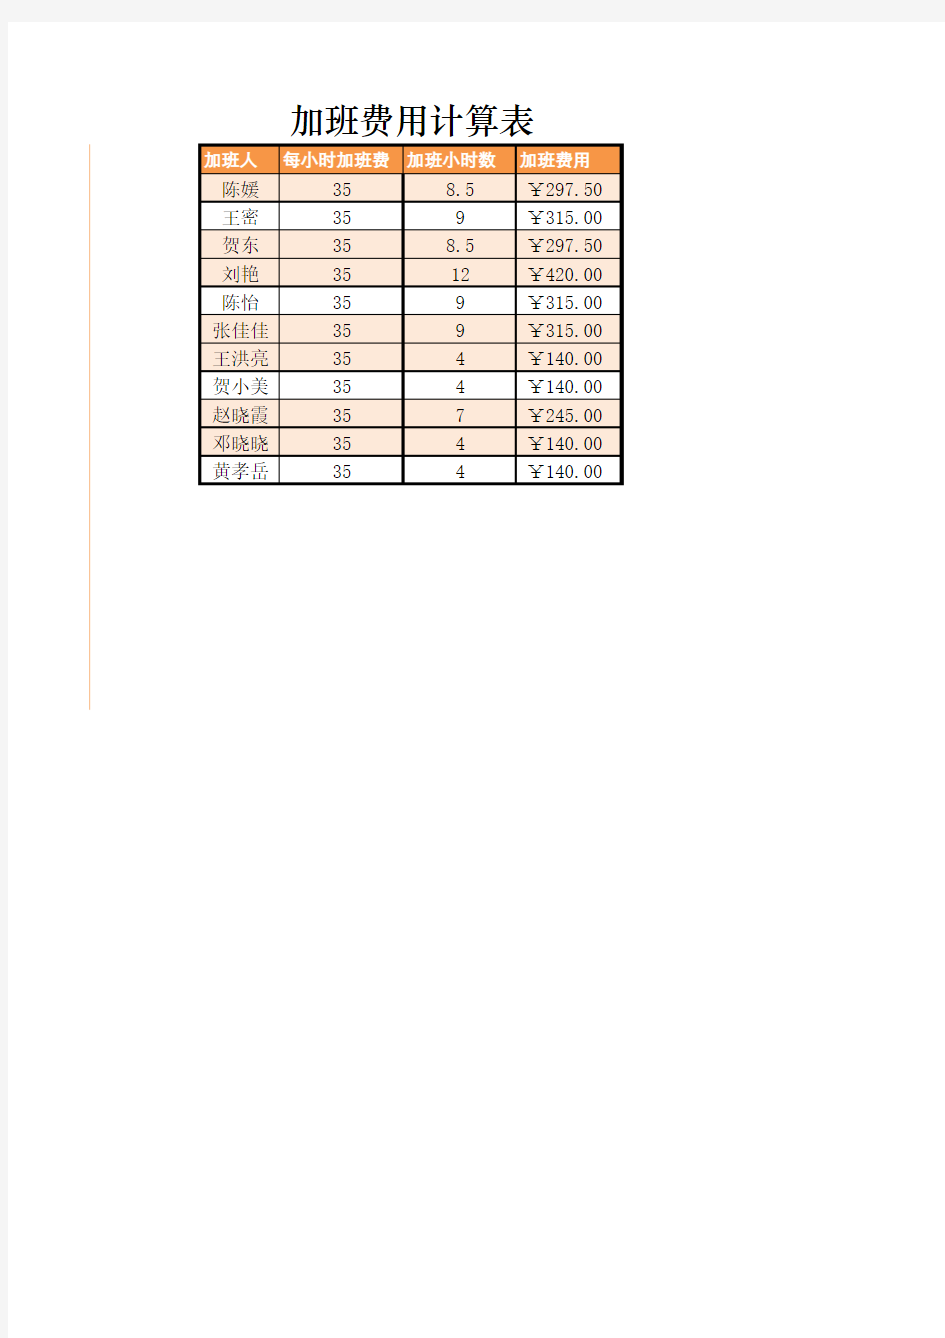 加班记录表及加班费用计算Excel表格模板